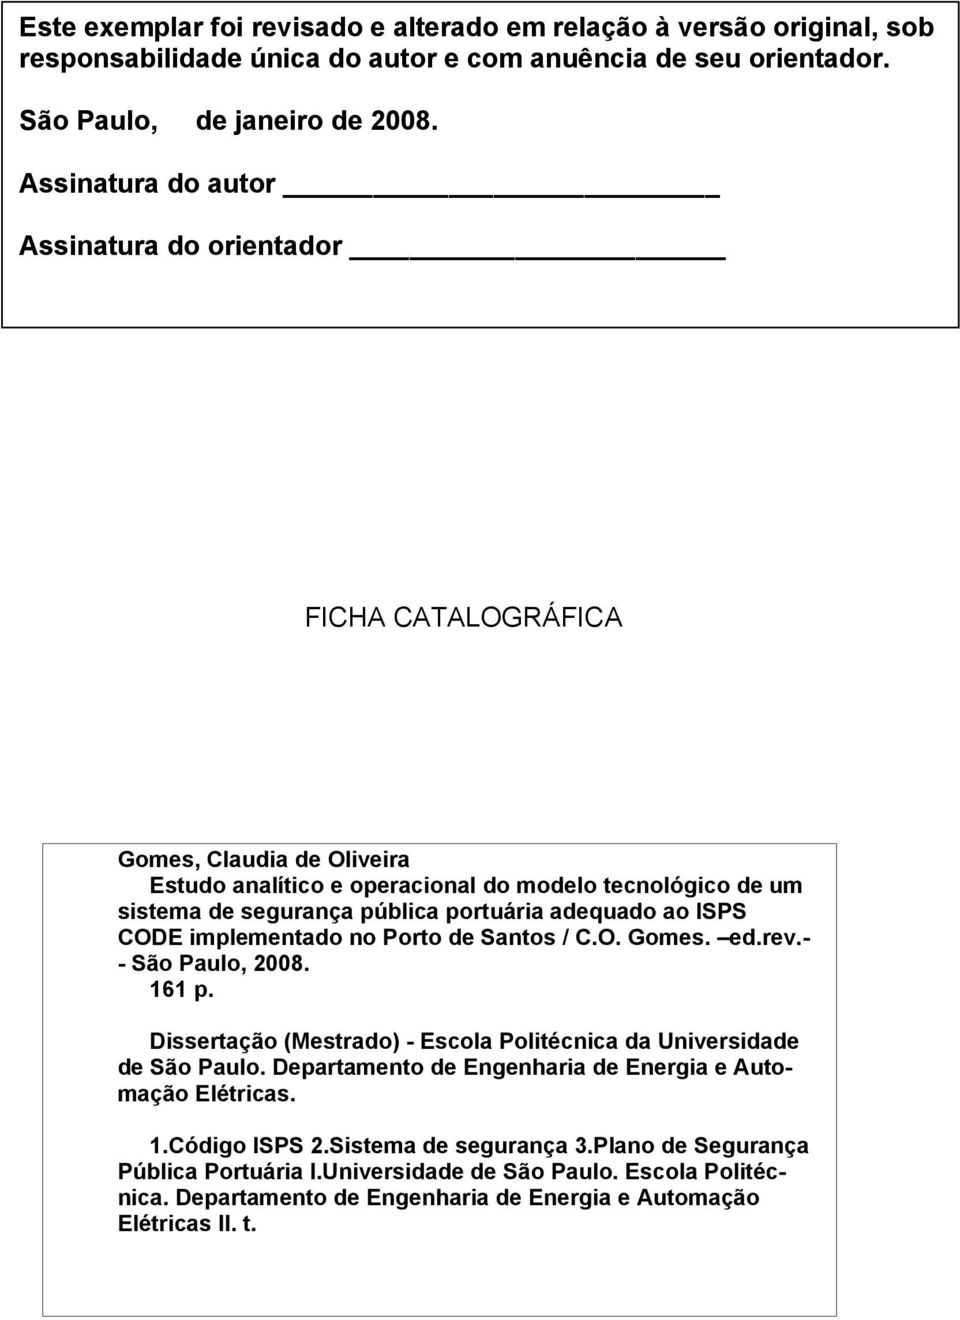 adequado ao ISPS CODE implementado no Porto de Santos / C.O. Gomes. ed.rev.- - São Paulo, 2008. 161 p. Dissertação (Mestrado) - Escola Politécnica da Universidade de São Paulo.